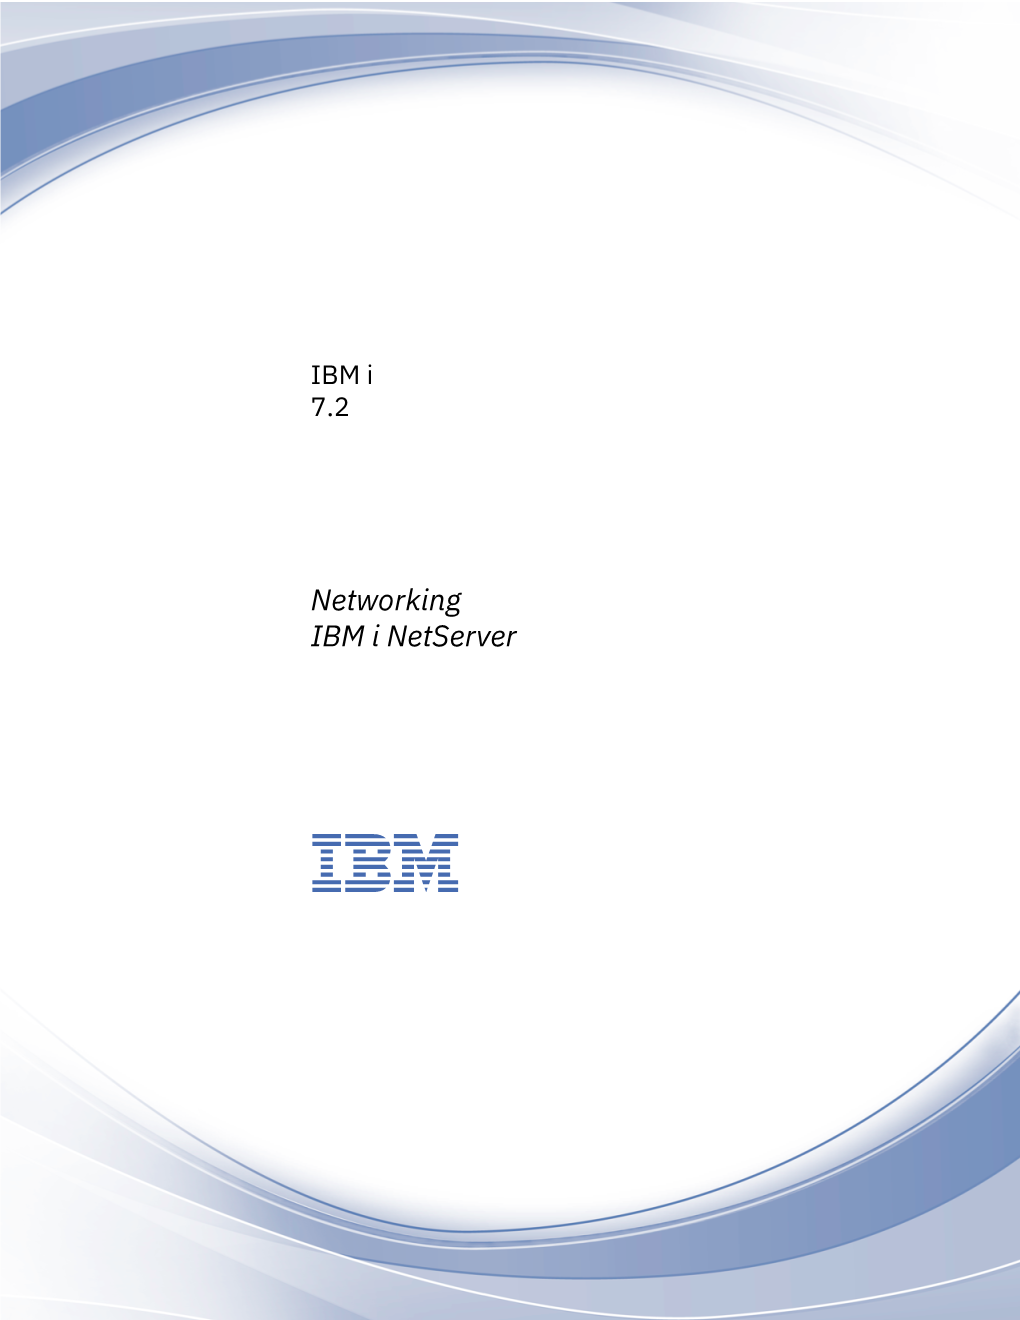 IBM I Netserver